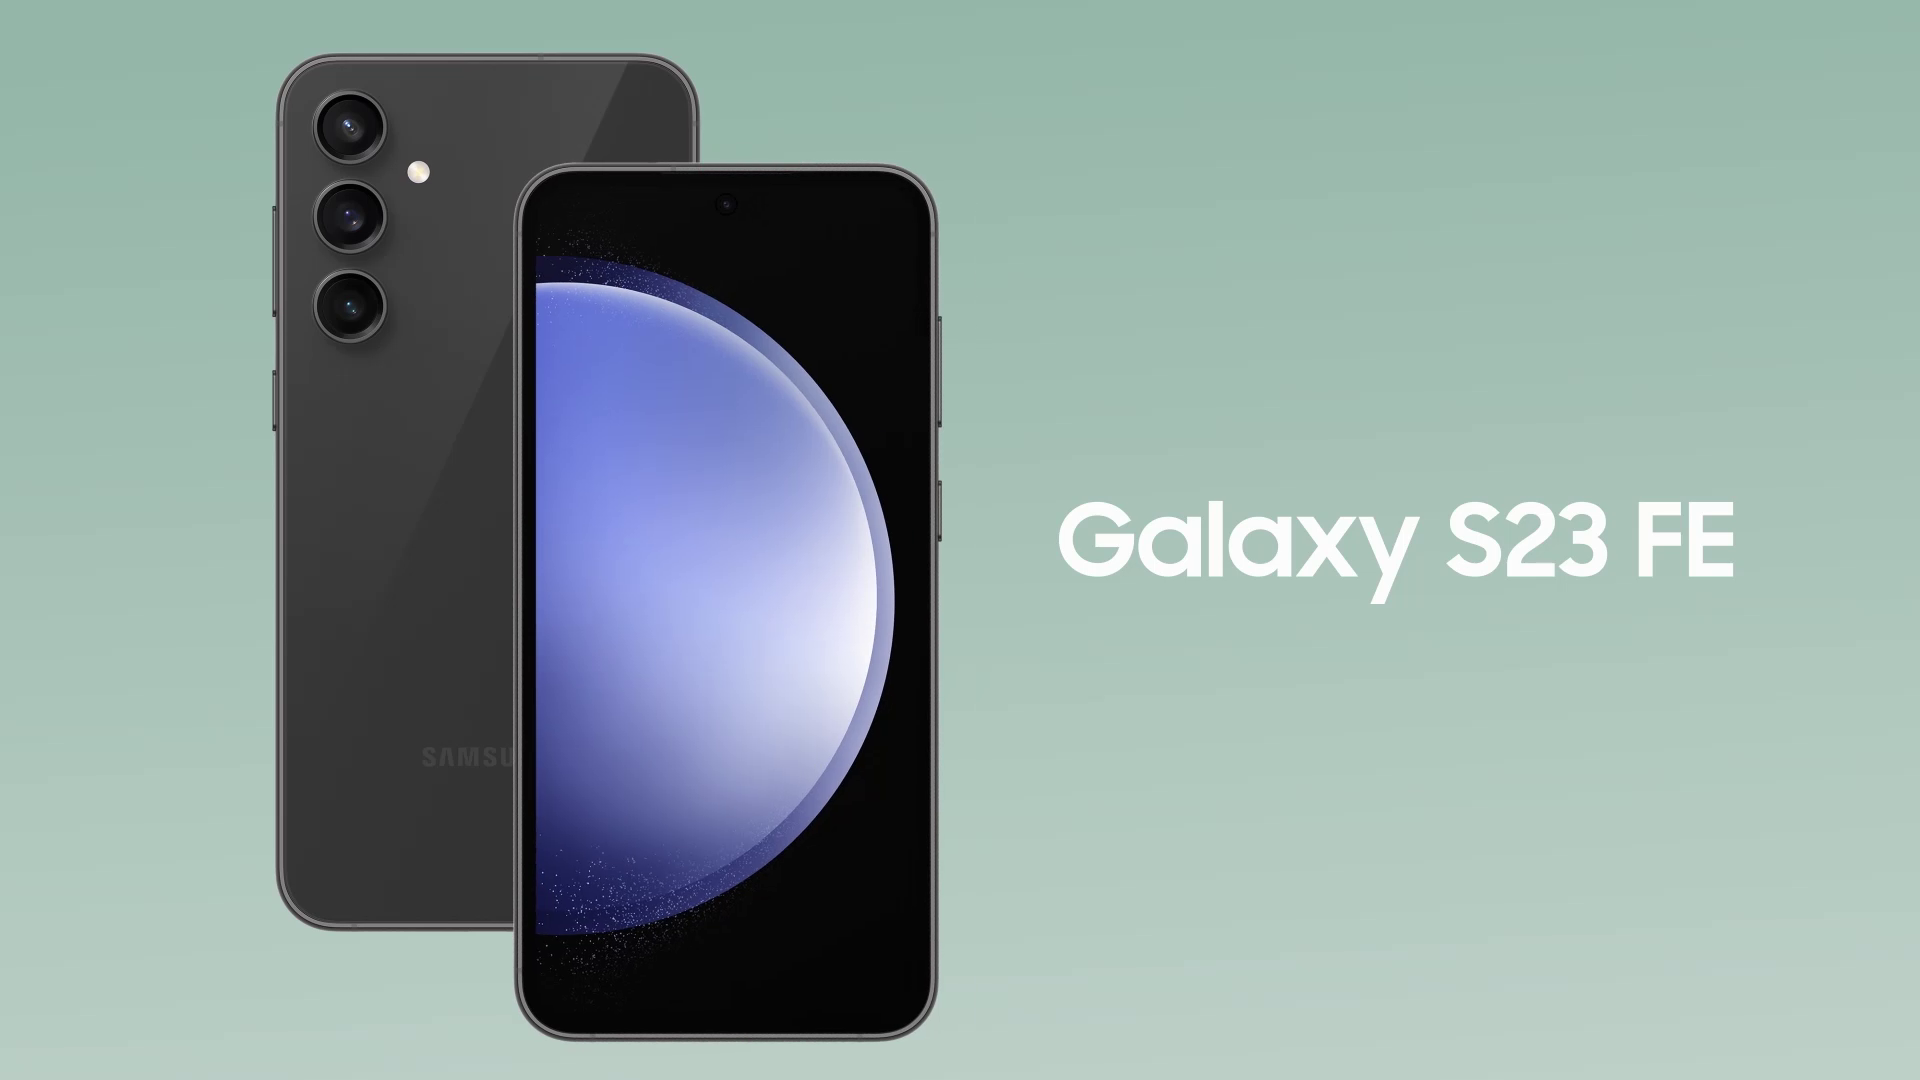 Samsung Galaxy S23 FE 5G 8Gb Ram, 128GB Storage